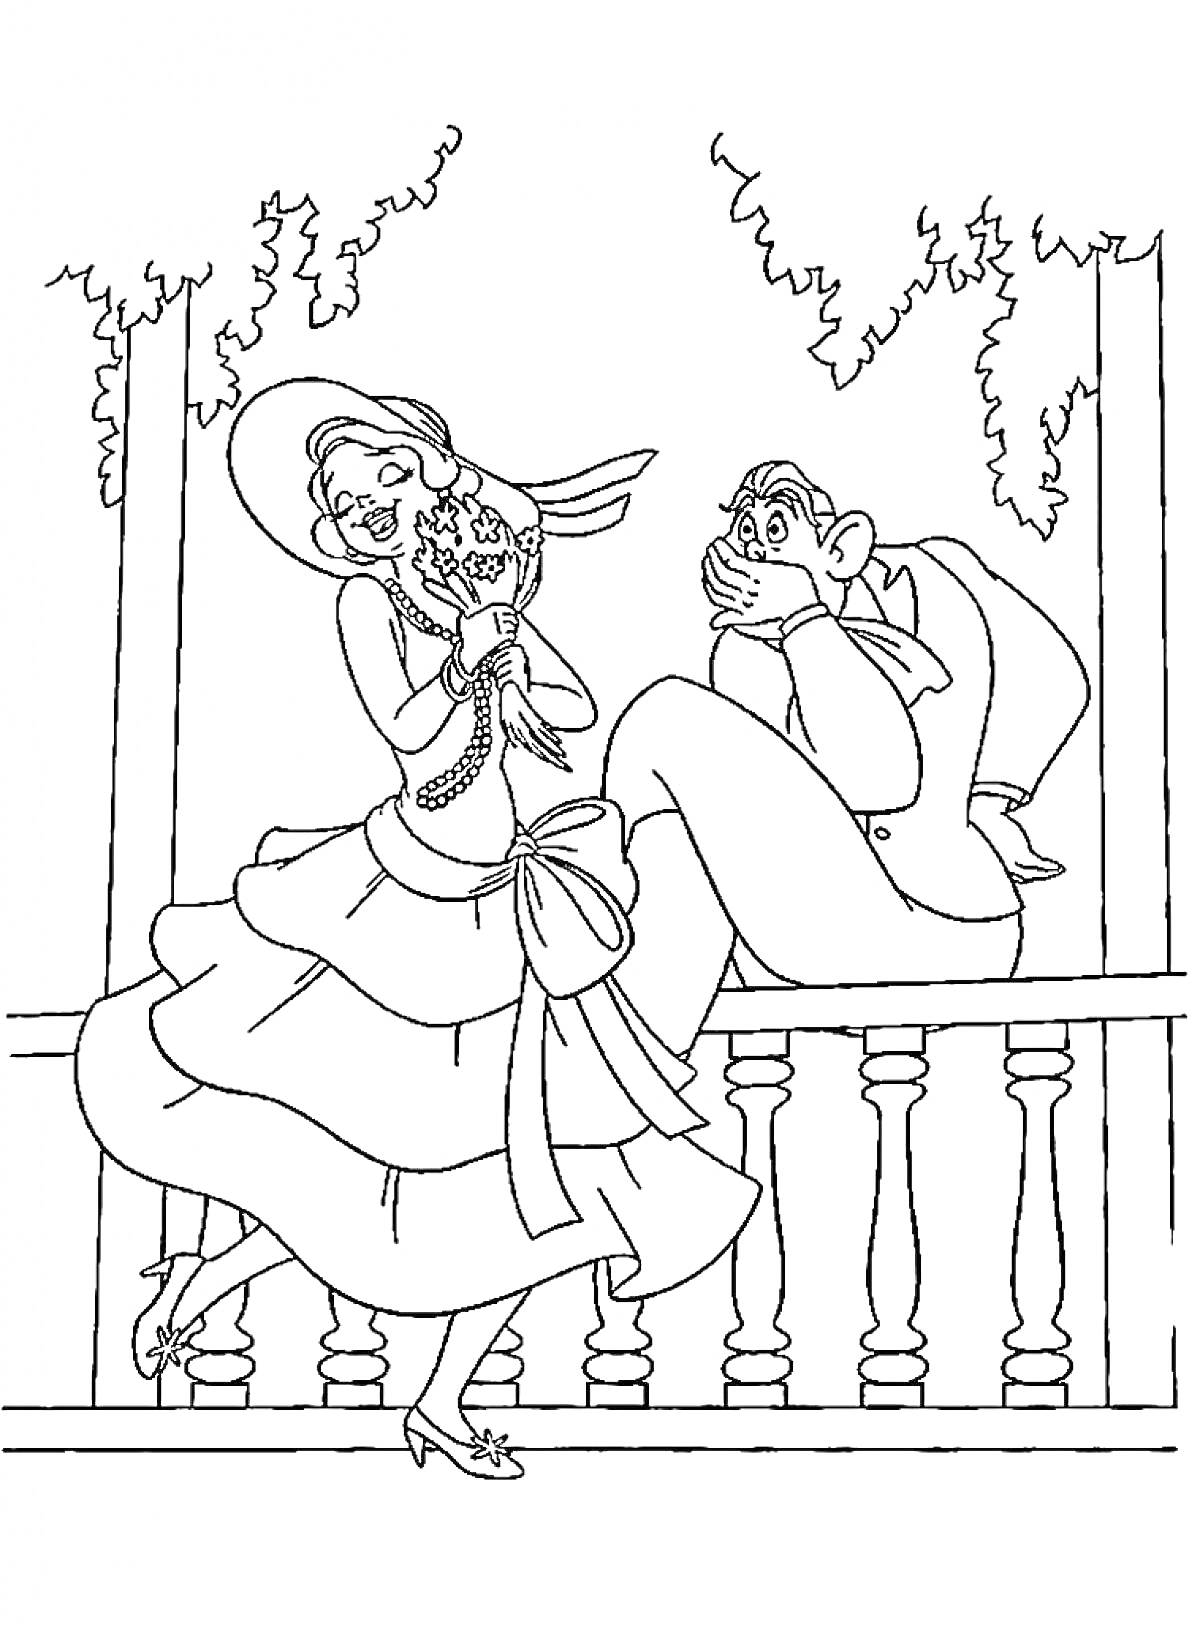 Раскраска Принцесса на балконе с лягушкой и удивлённый мужчина позади